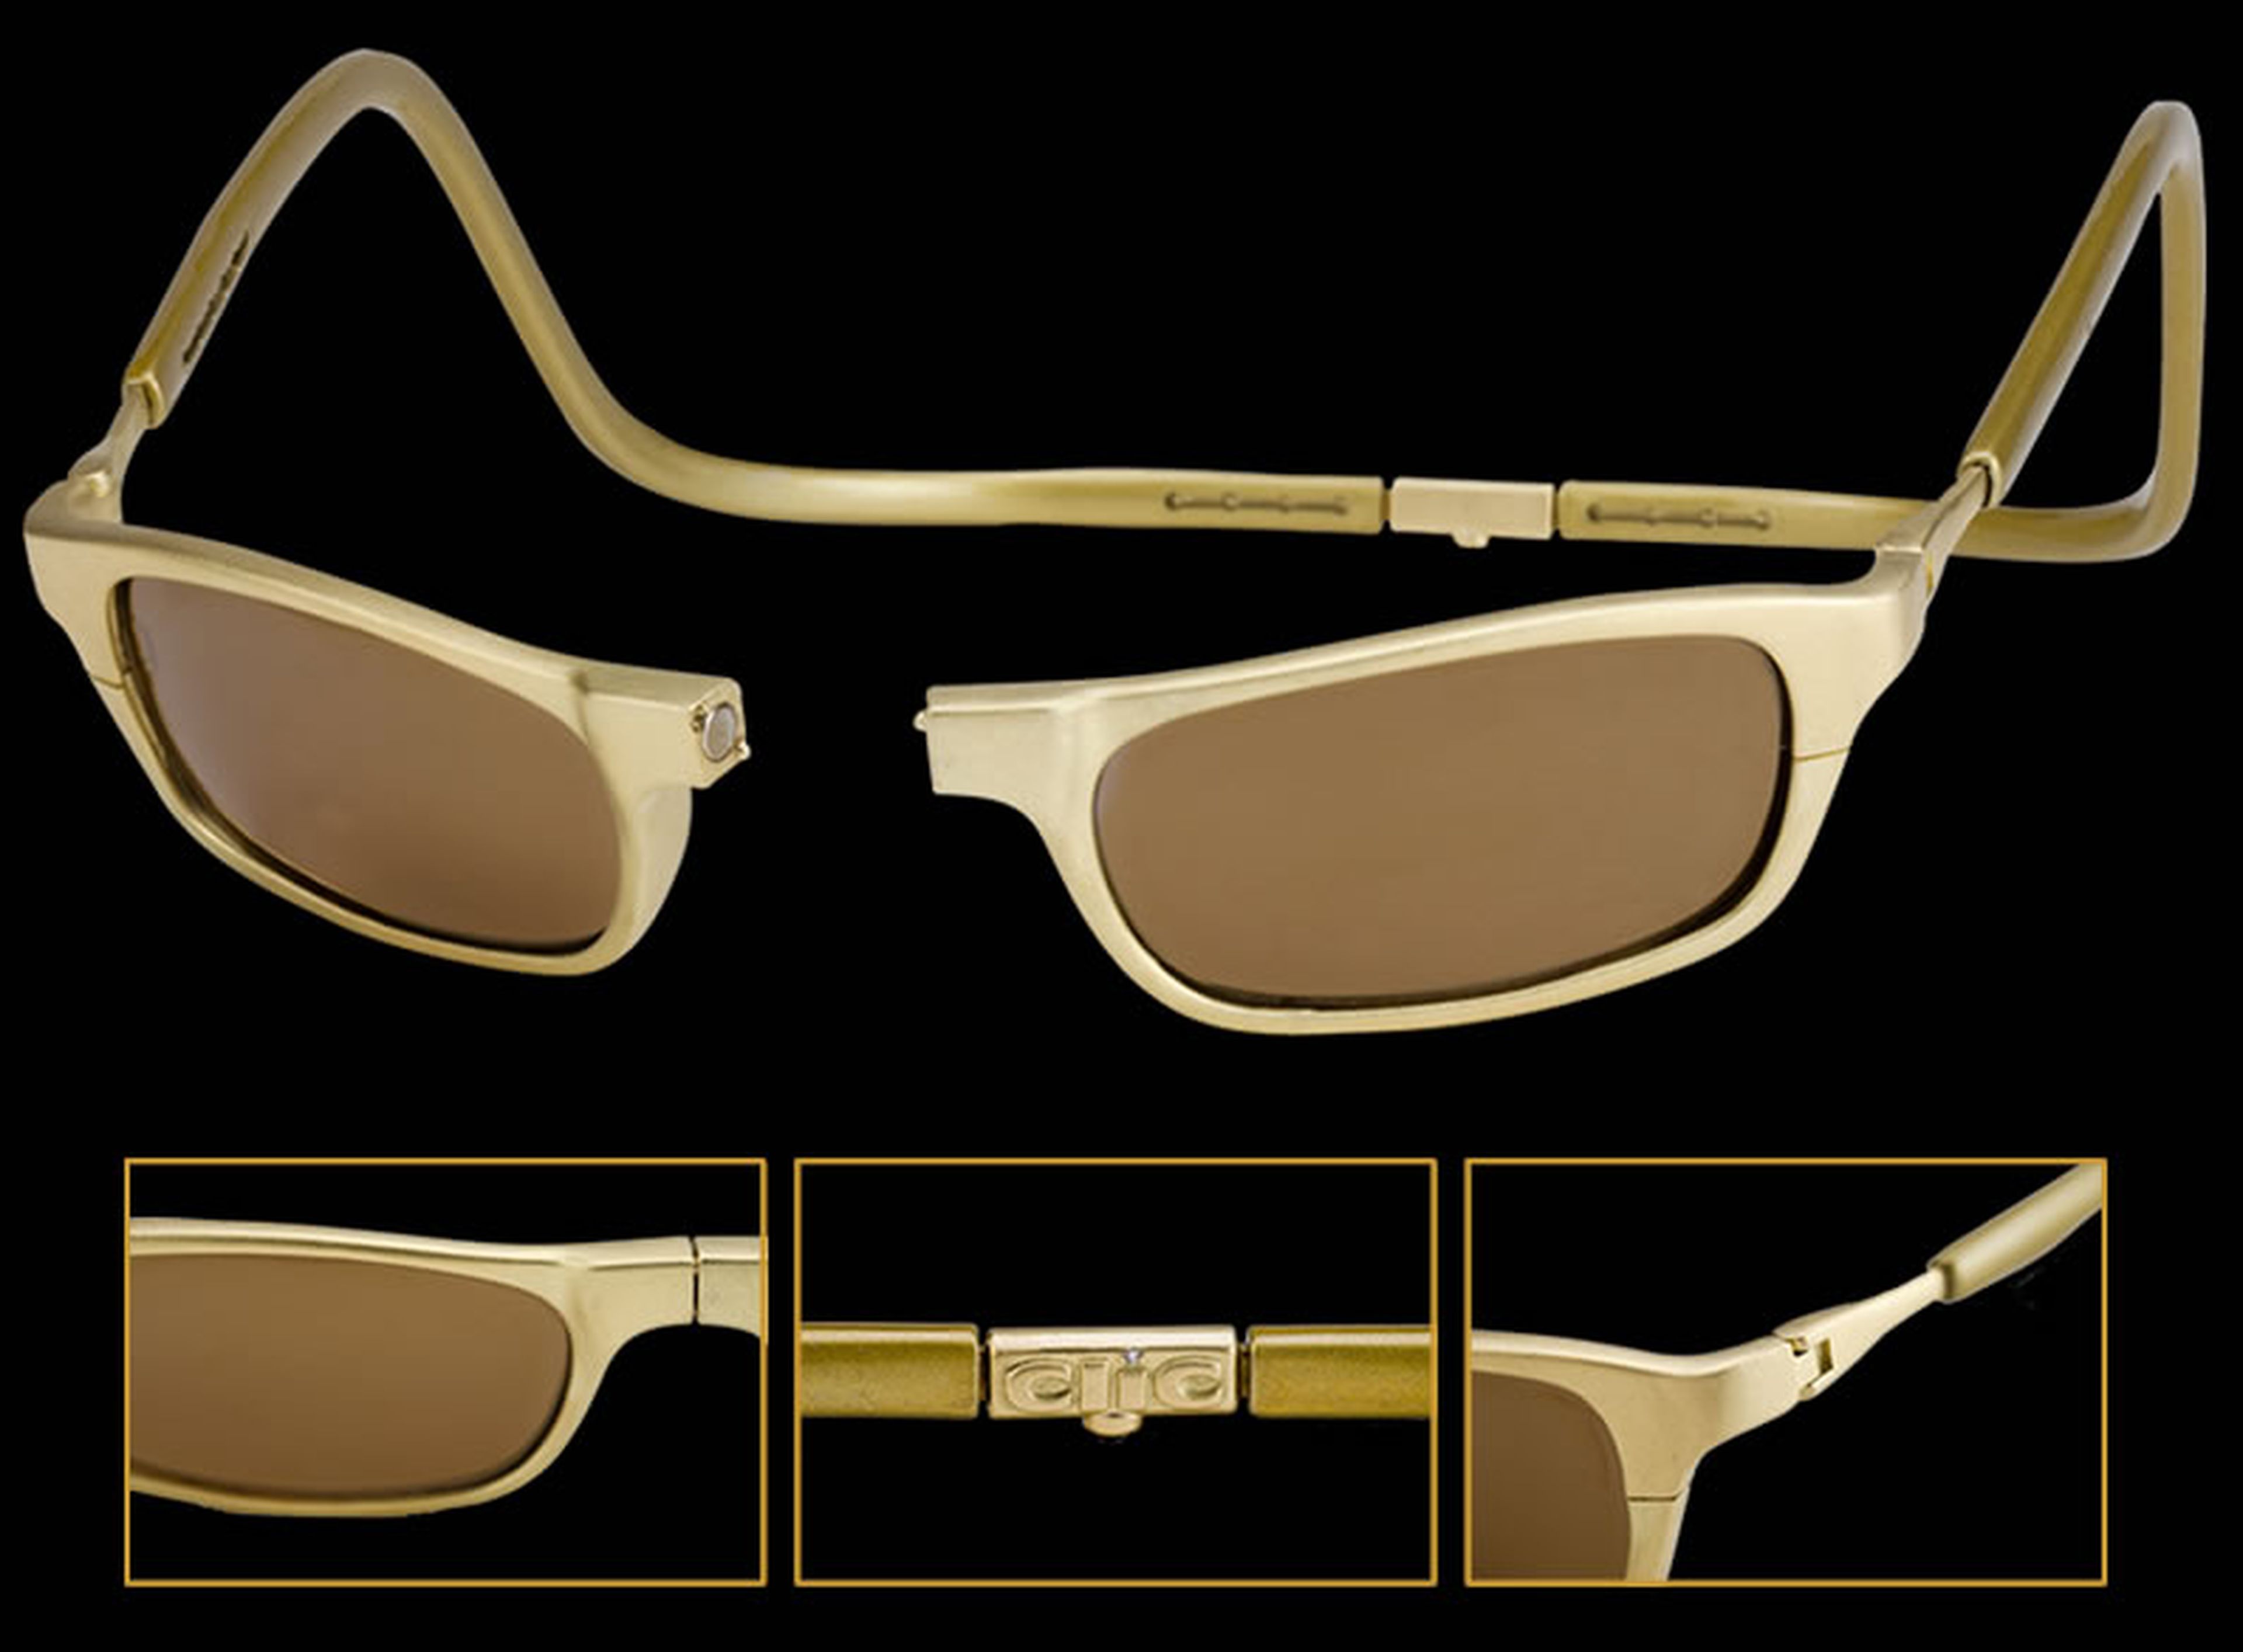 Detalles de las gafas de sol de oro de 18 kilates Clic Gold